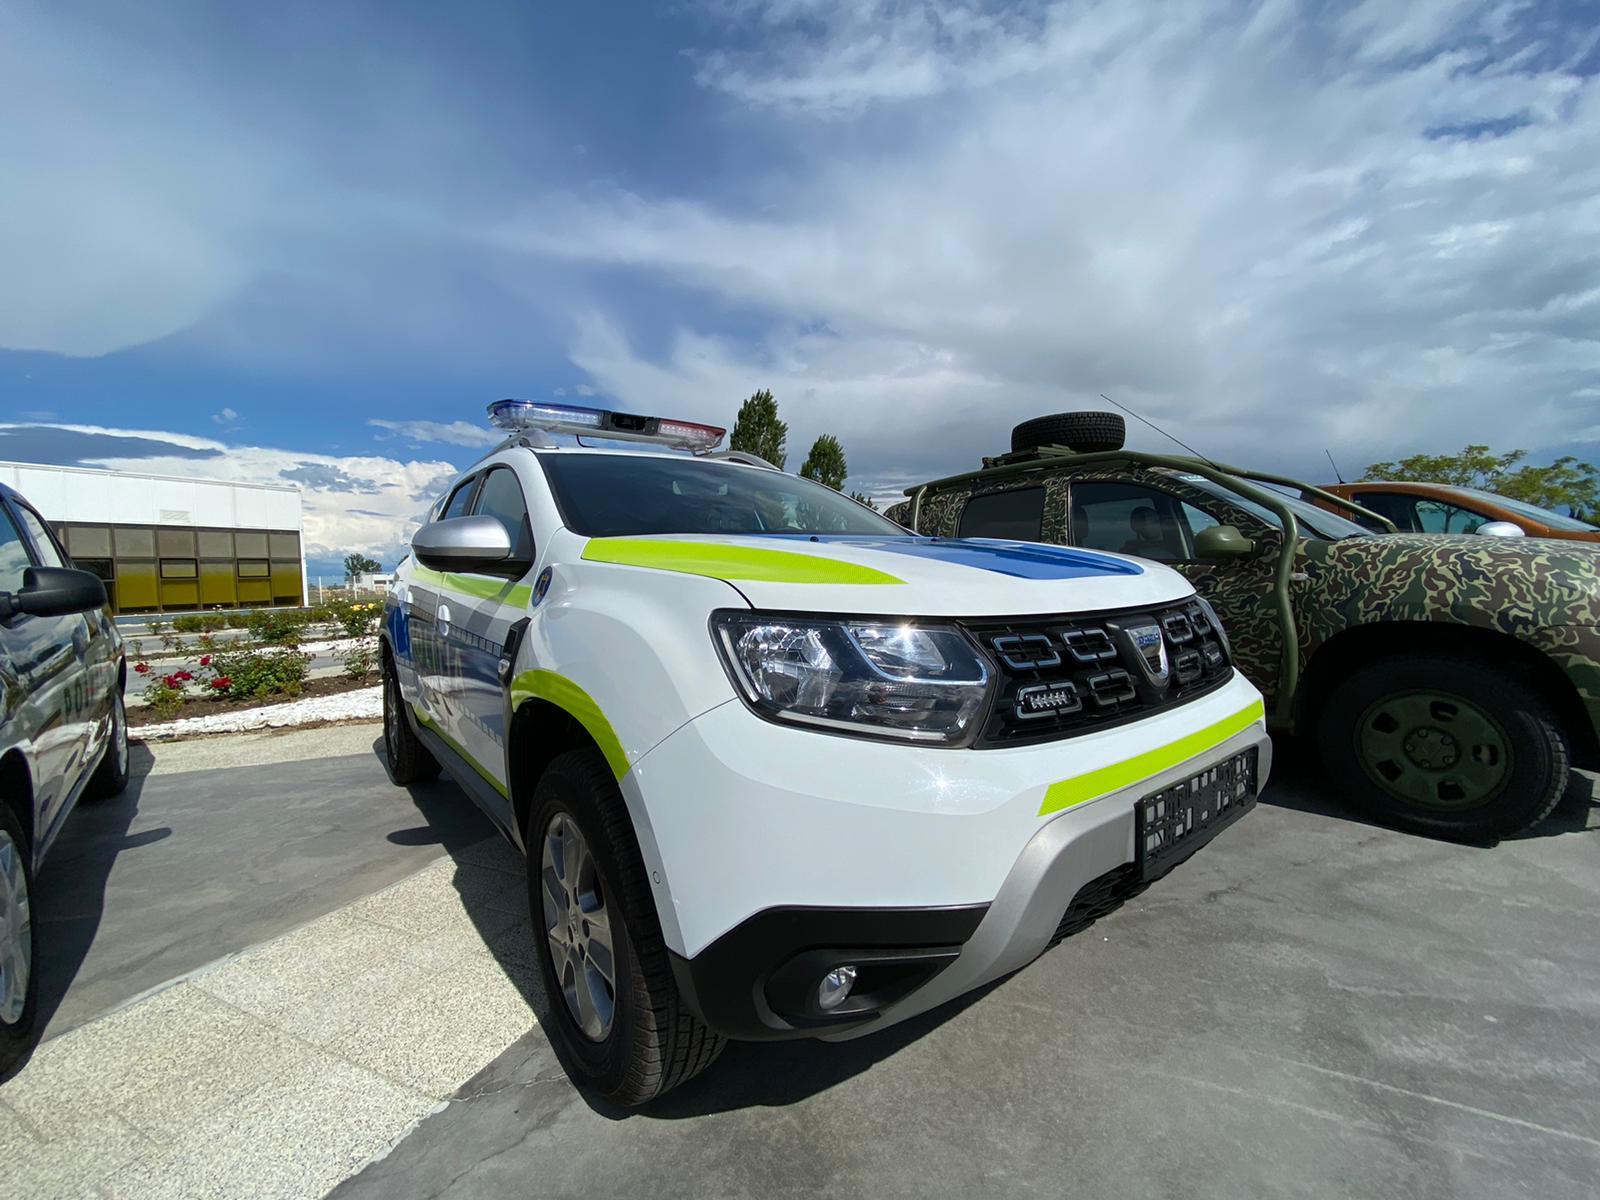 GALERIE FOTO. Poliţia Română cumpără peste 6.700 de maşini Dacia - Imaginea 5